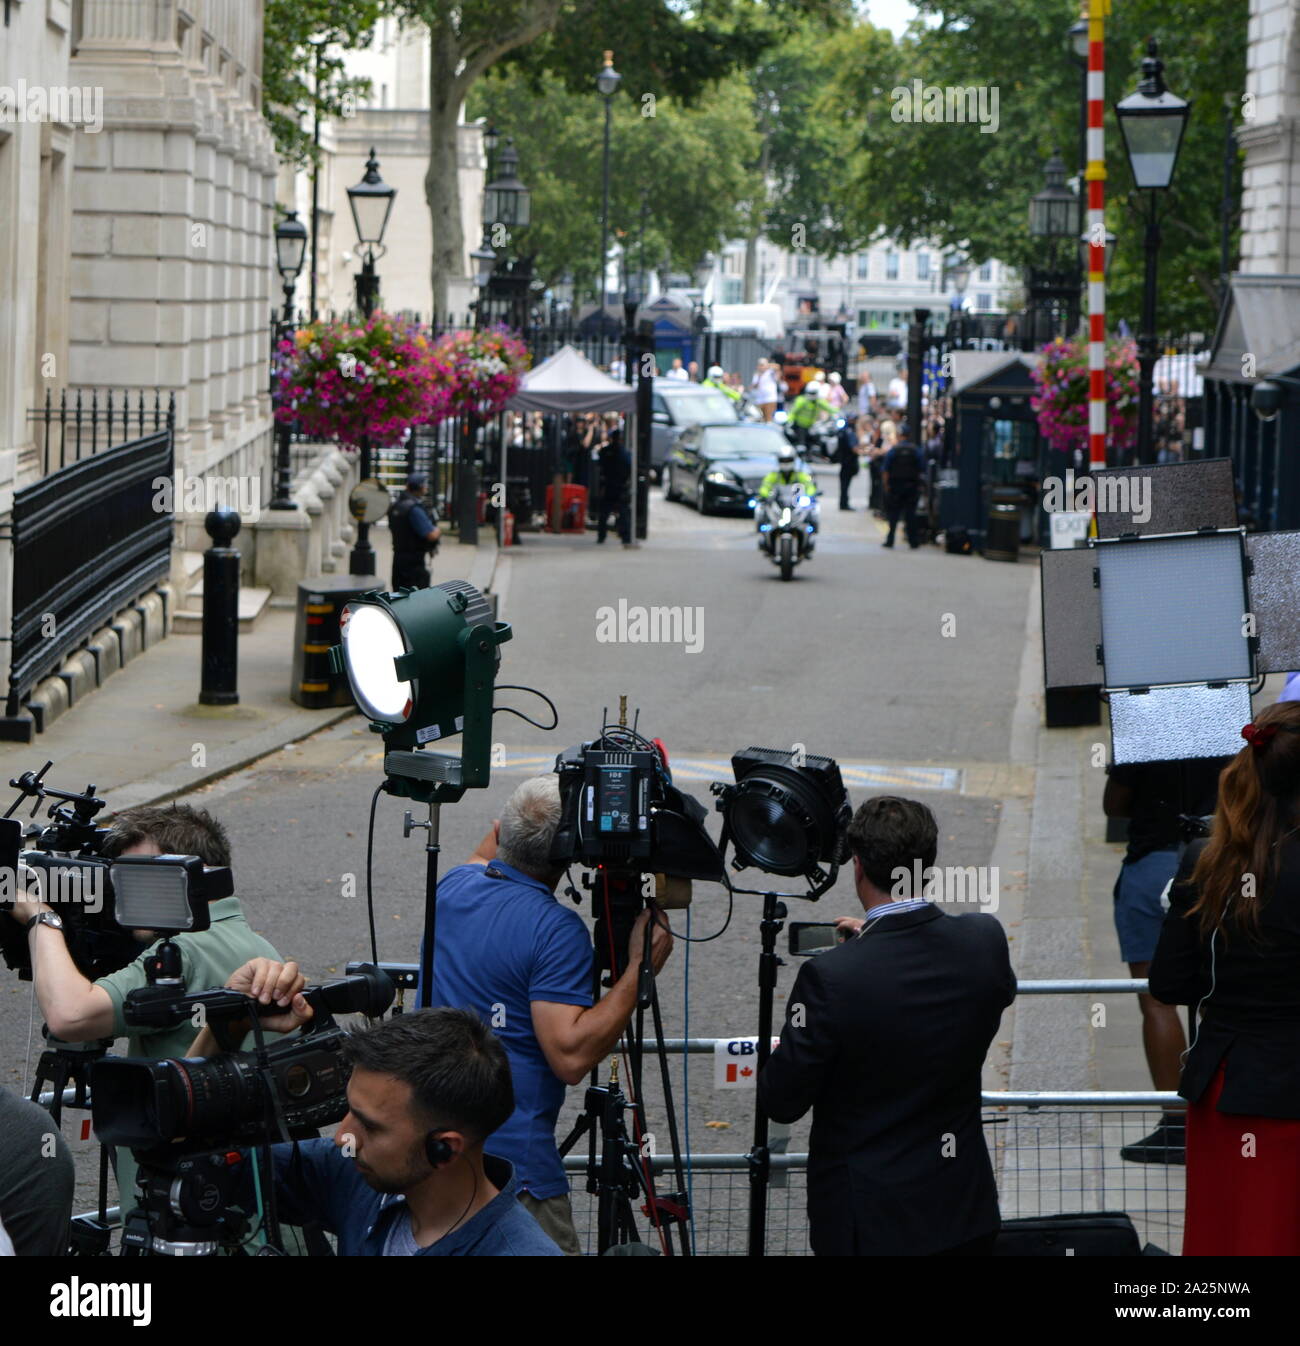 Theresa peut arrive à Downing Street, Londres pour le dernier jour de son premier ministre. Theresa may, premier ministre du Royaume-Uni, le 13 juillet 2016 - 24 juillet 2019. mai a été chef du parti conservateur à partir de juillet 2016 - 23 juillet 2019 Banque D'Images